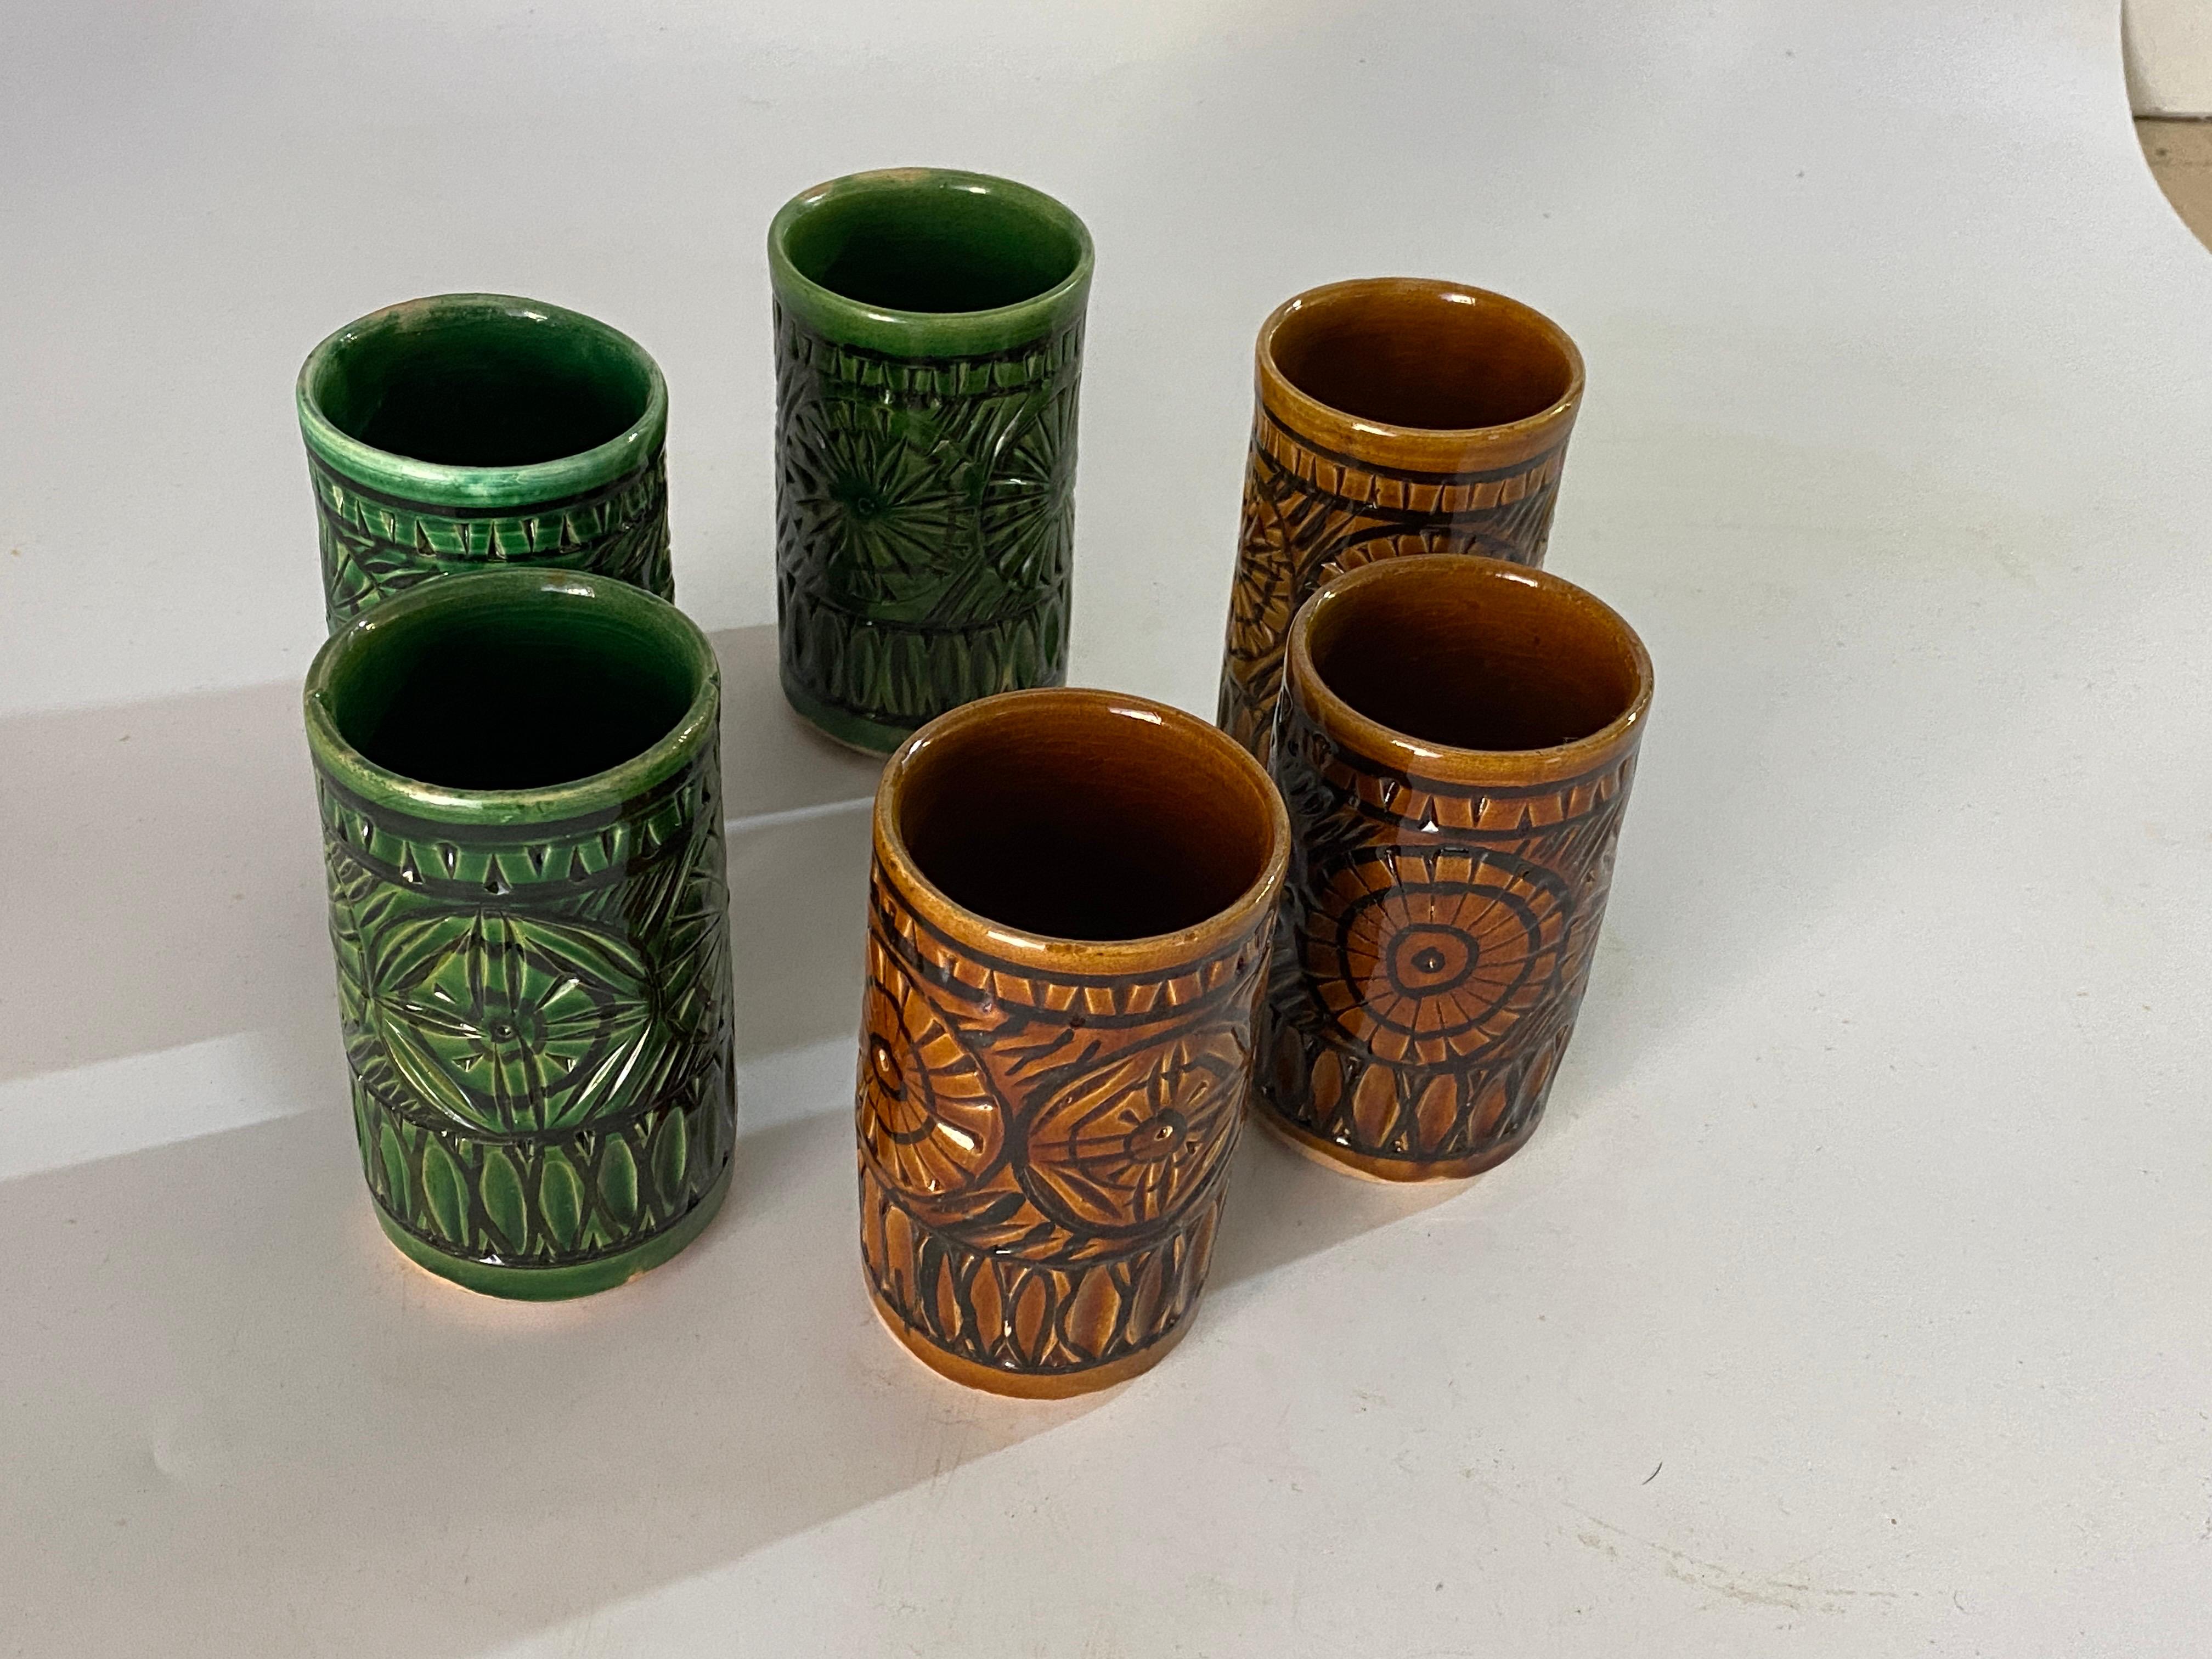 Ensemble de six verres en céramique Vallauris, 1970. Ils ont été fabriqués en France.
Les couleurs sont le vert et le marron.
Comme elles sont fabriquées à la main, les deux lasses brunes sont légèrement plus petites.